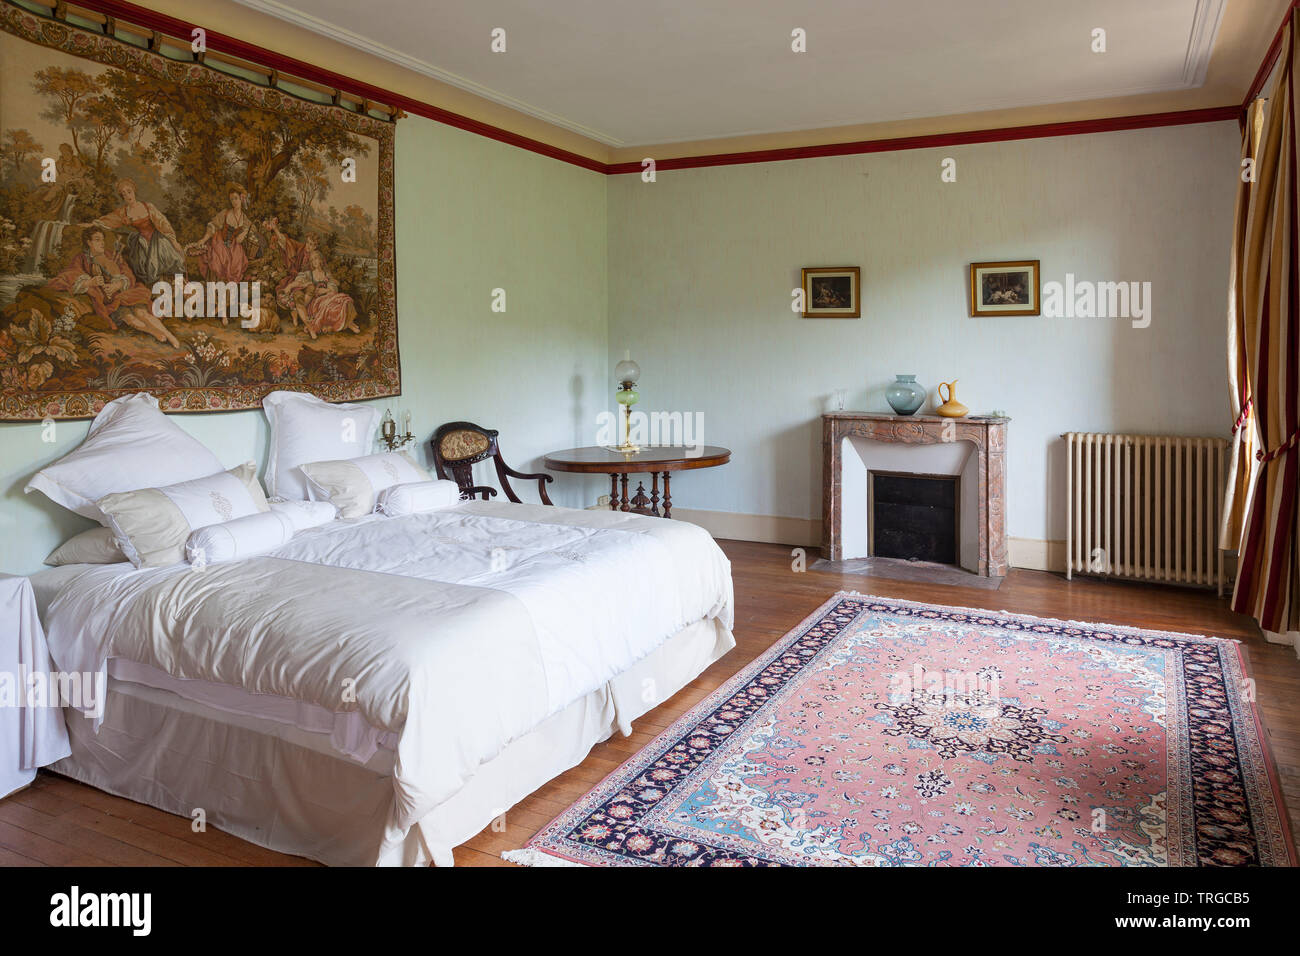 Einrichtung eines historischen französischen Landhaus mit Antiquitäten  eingerichtet. Schlafzimmer mit französischem Kulturraum, Täbris persischen  Teppich und Kingsize-Bett Stockfotografie - Alamy